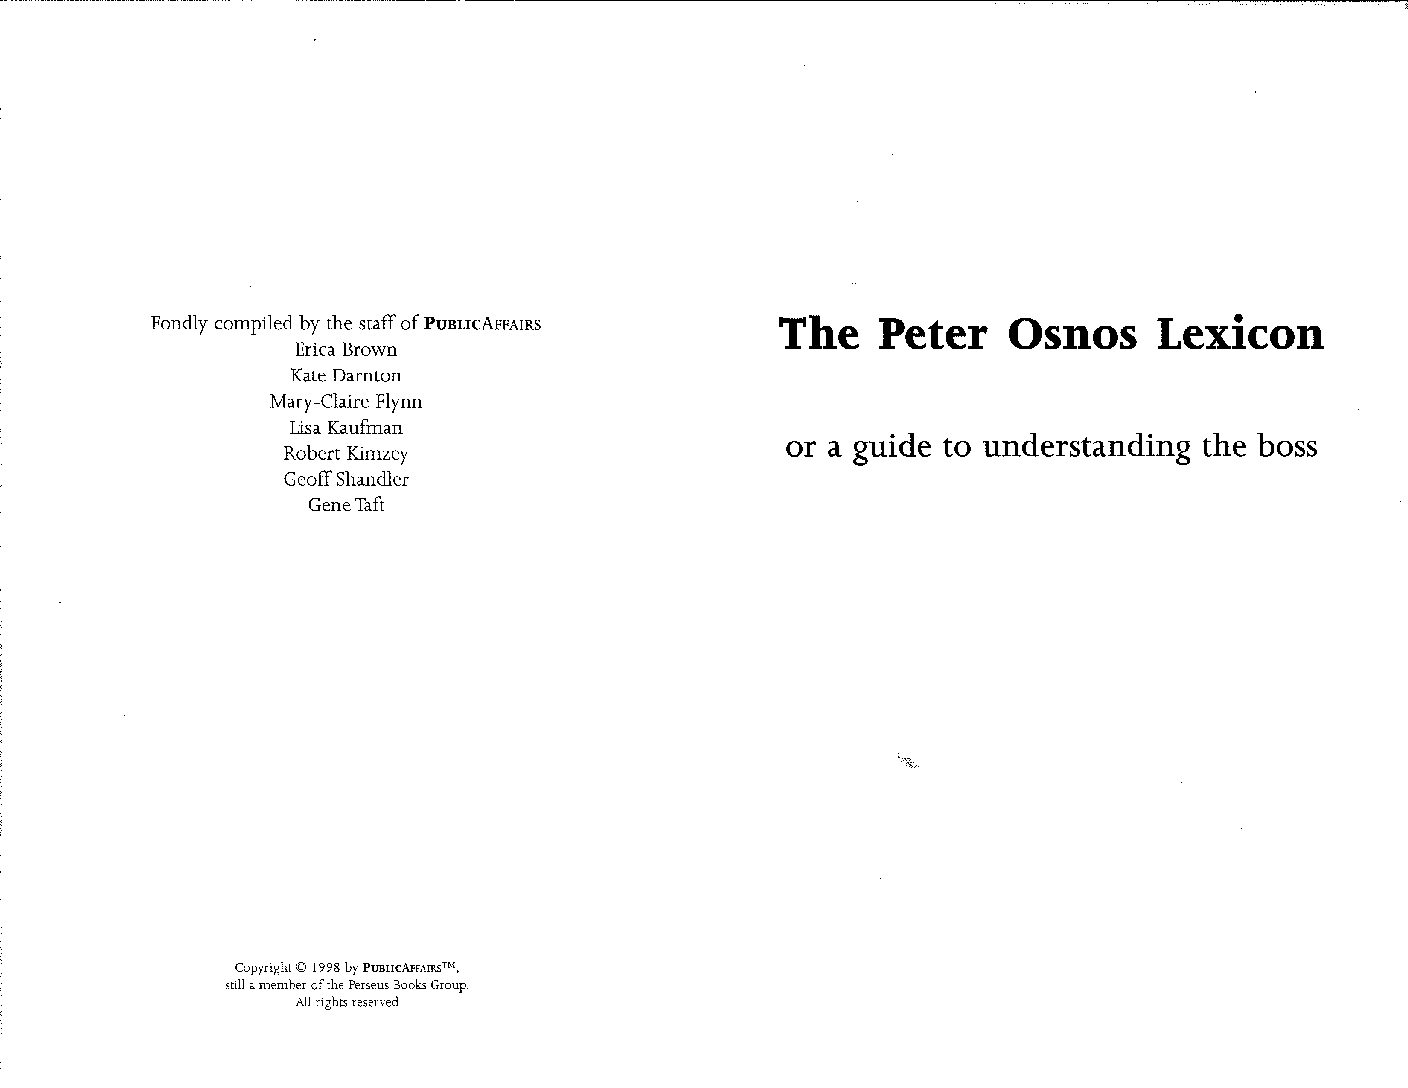 The Osnos Lexicon